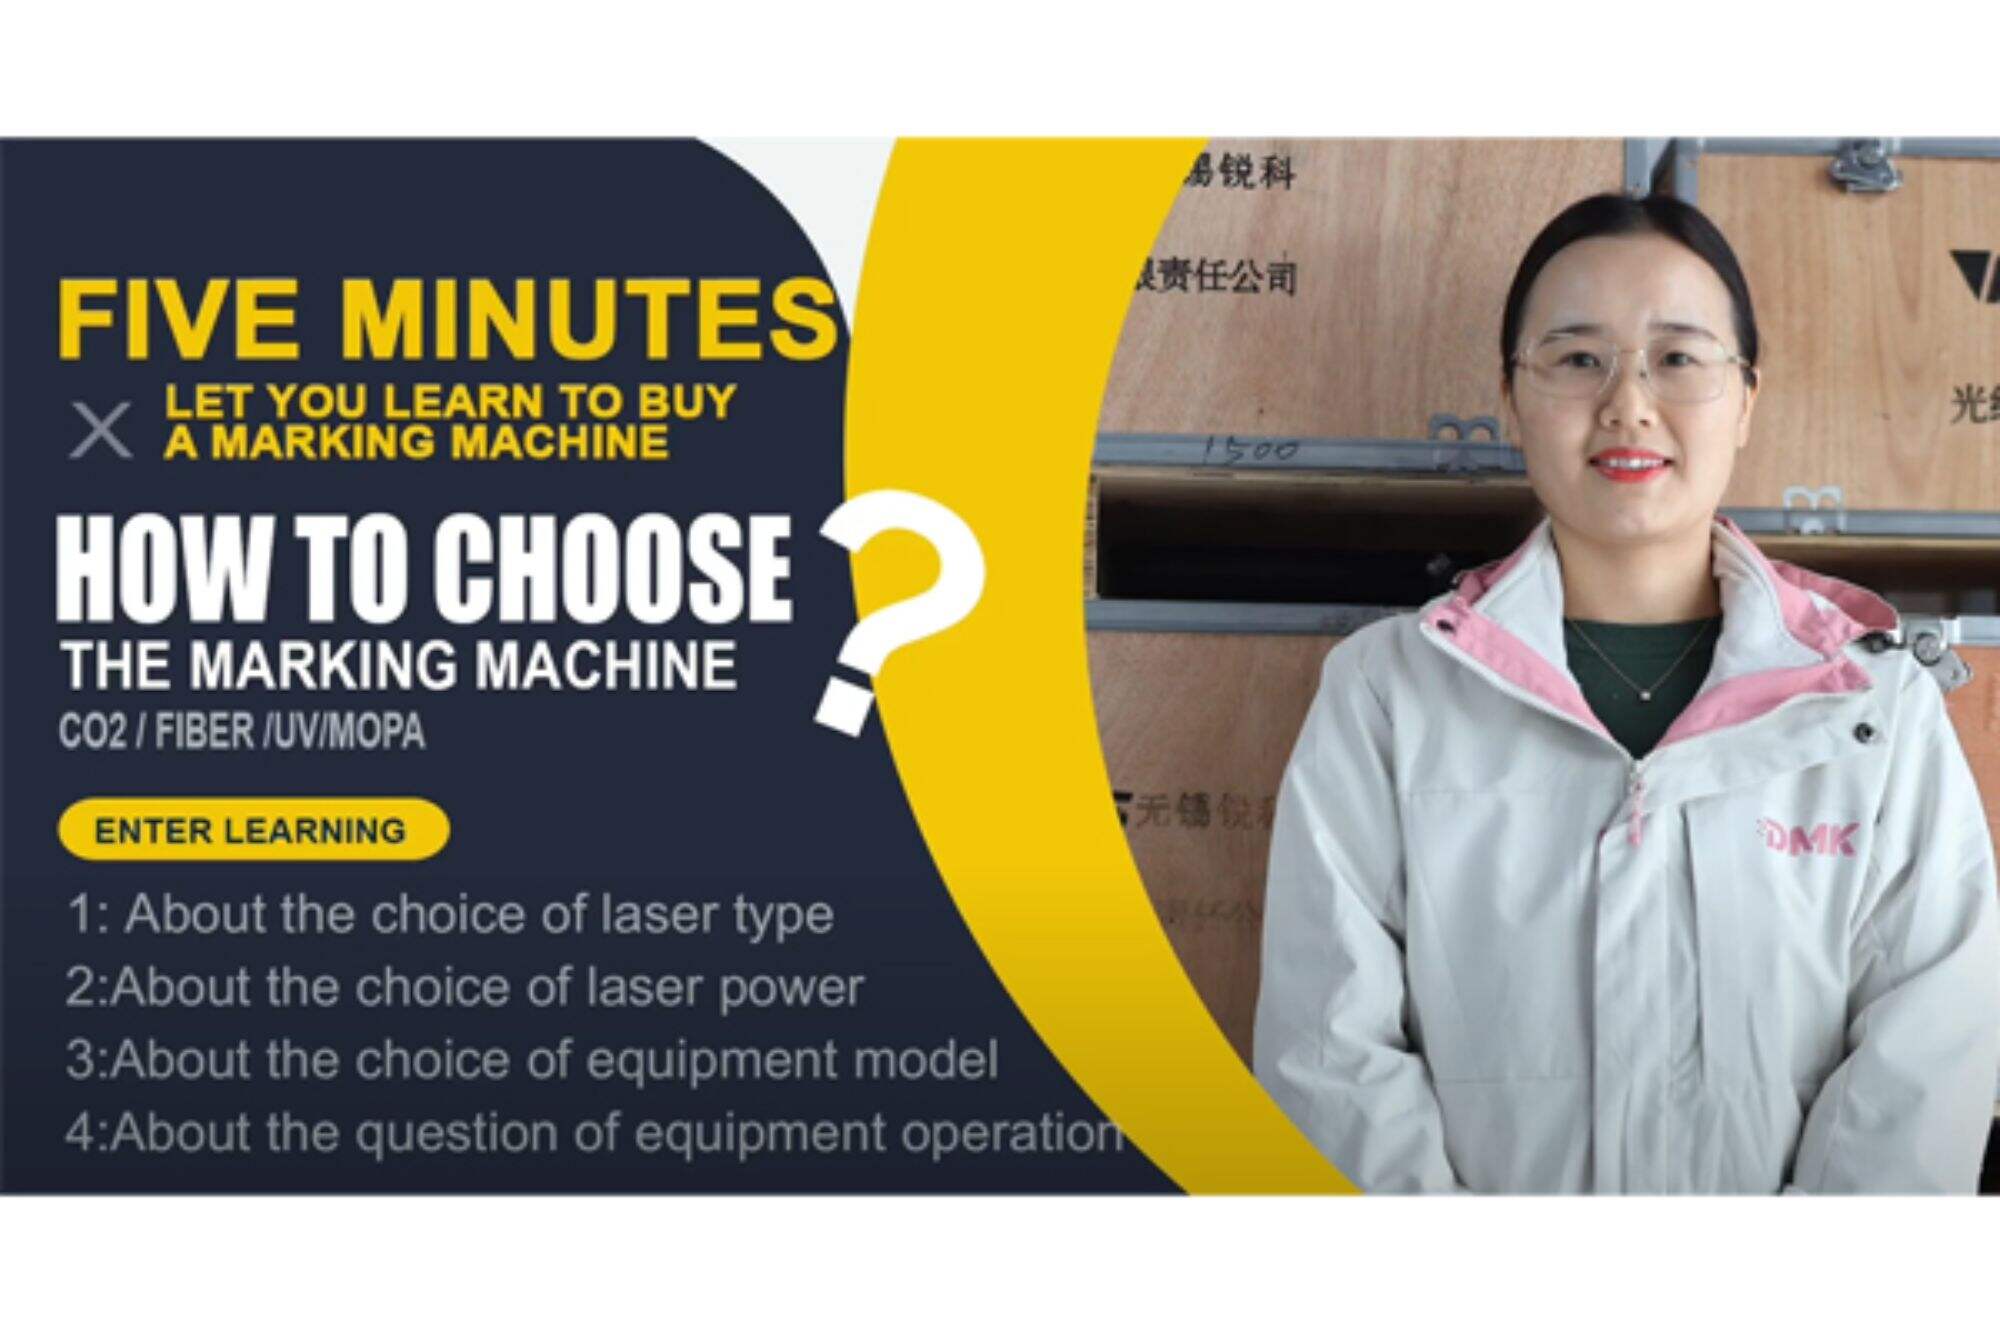 Як вибрати лазерну маркувальну машину? дозвольте нам сказати вам